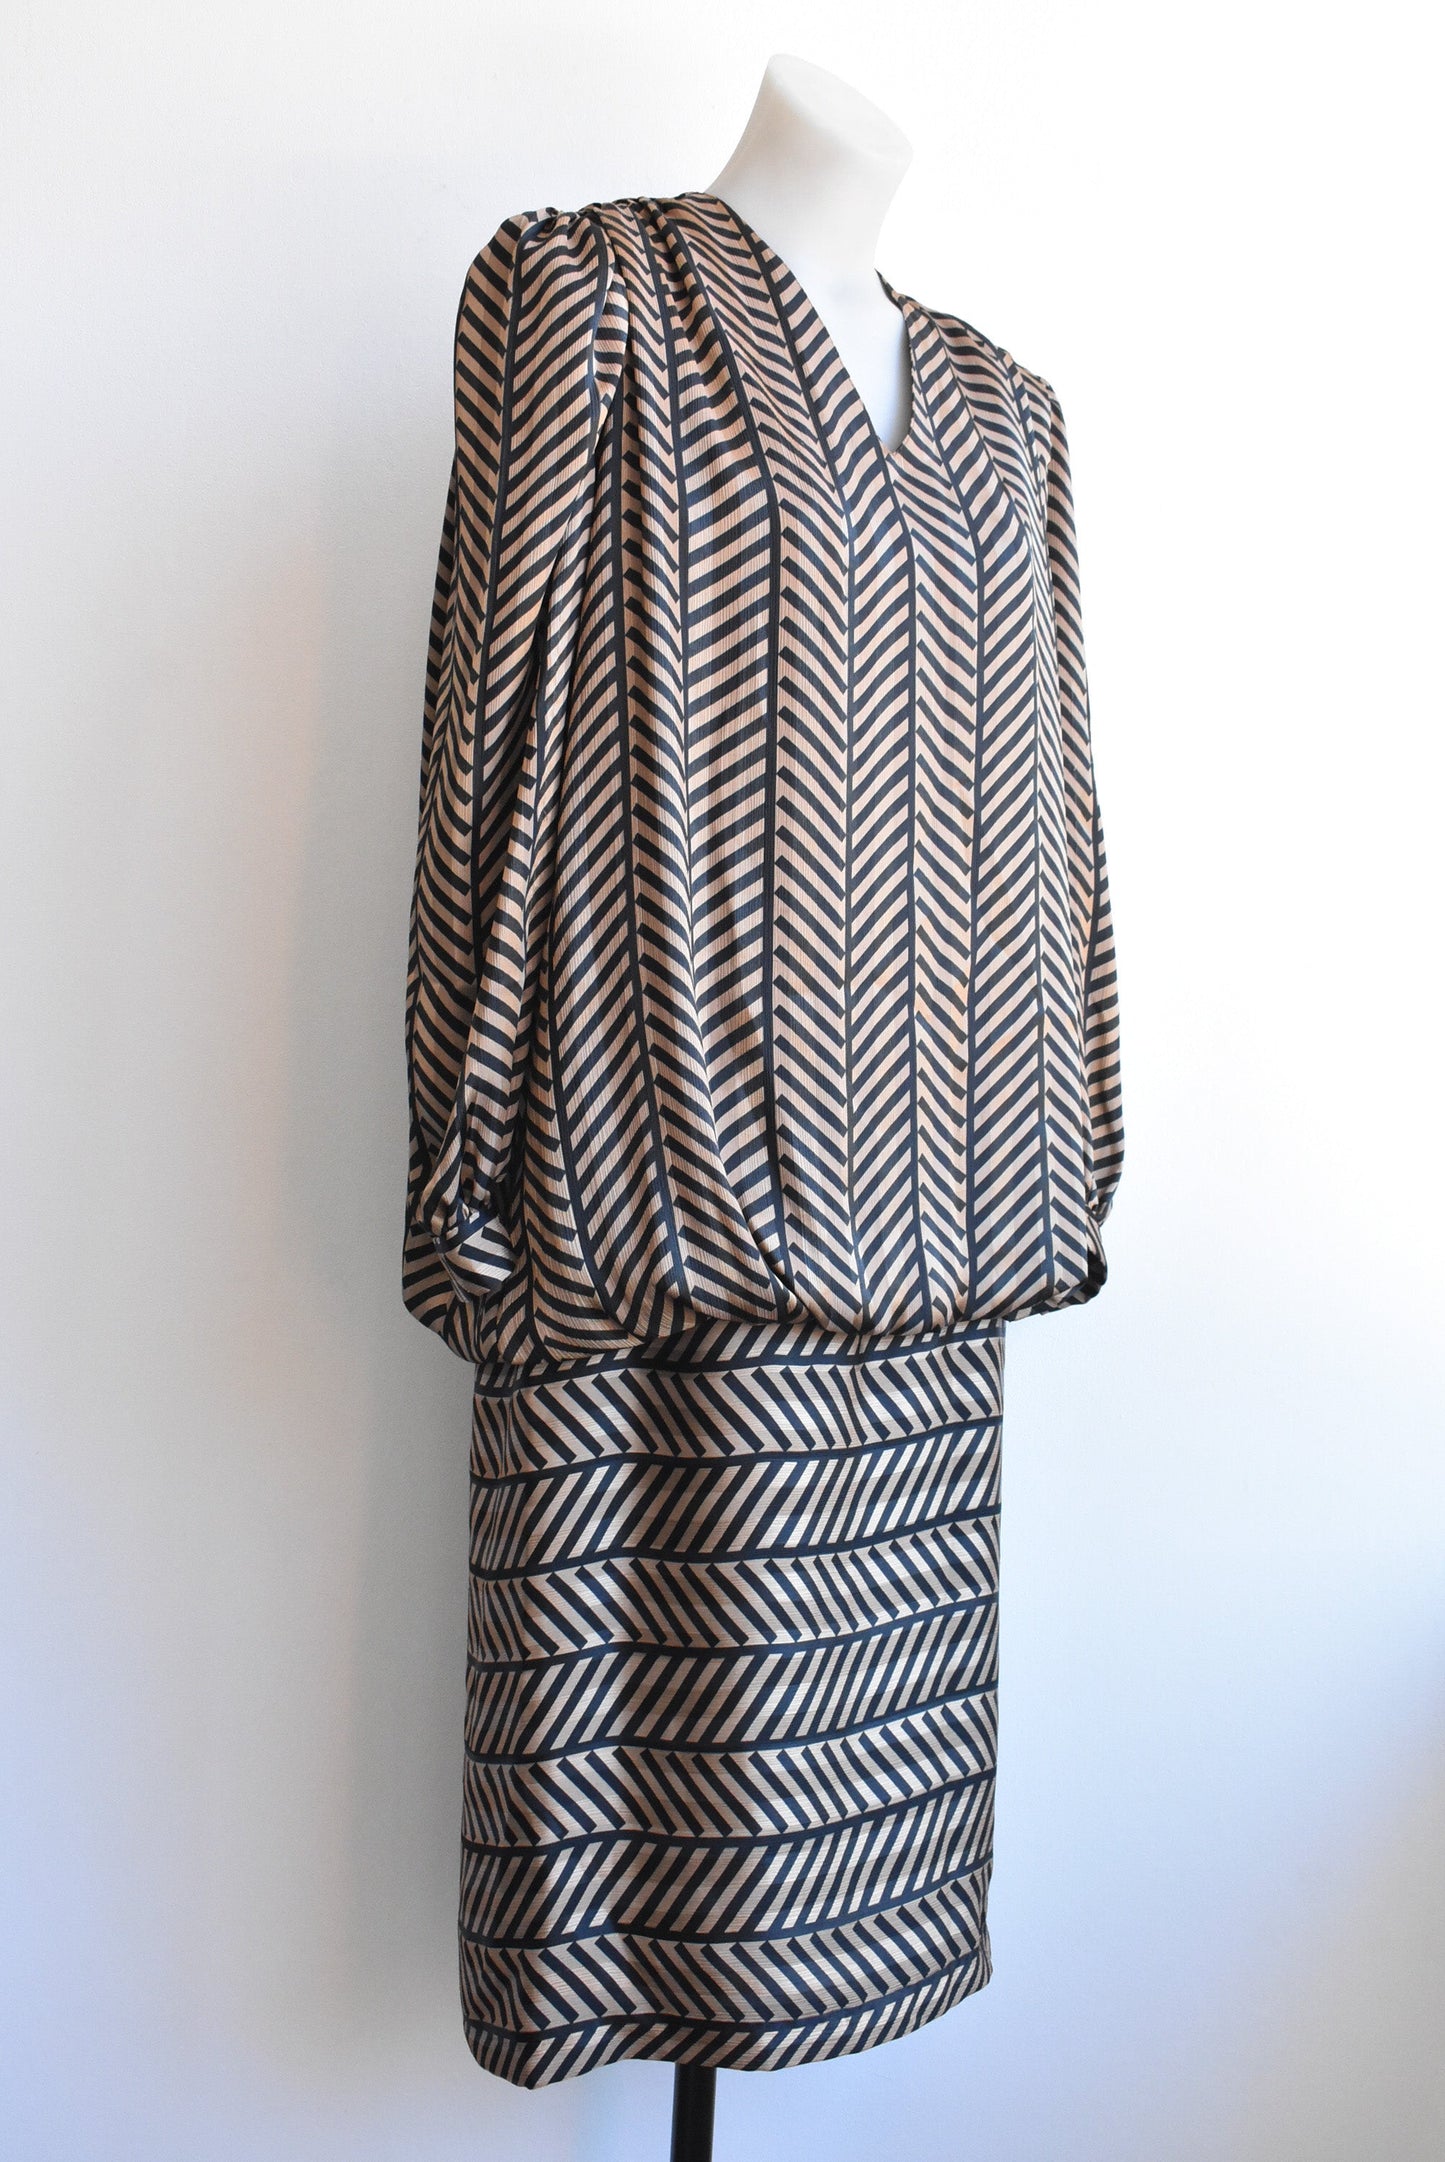 Kama Silhouet retro 80's dress, size 12